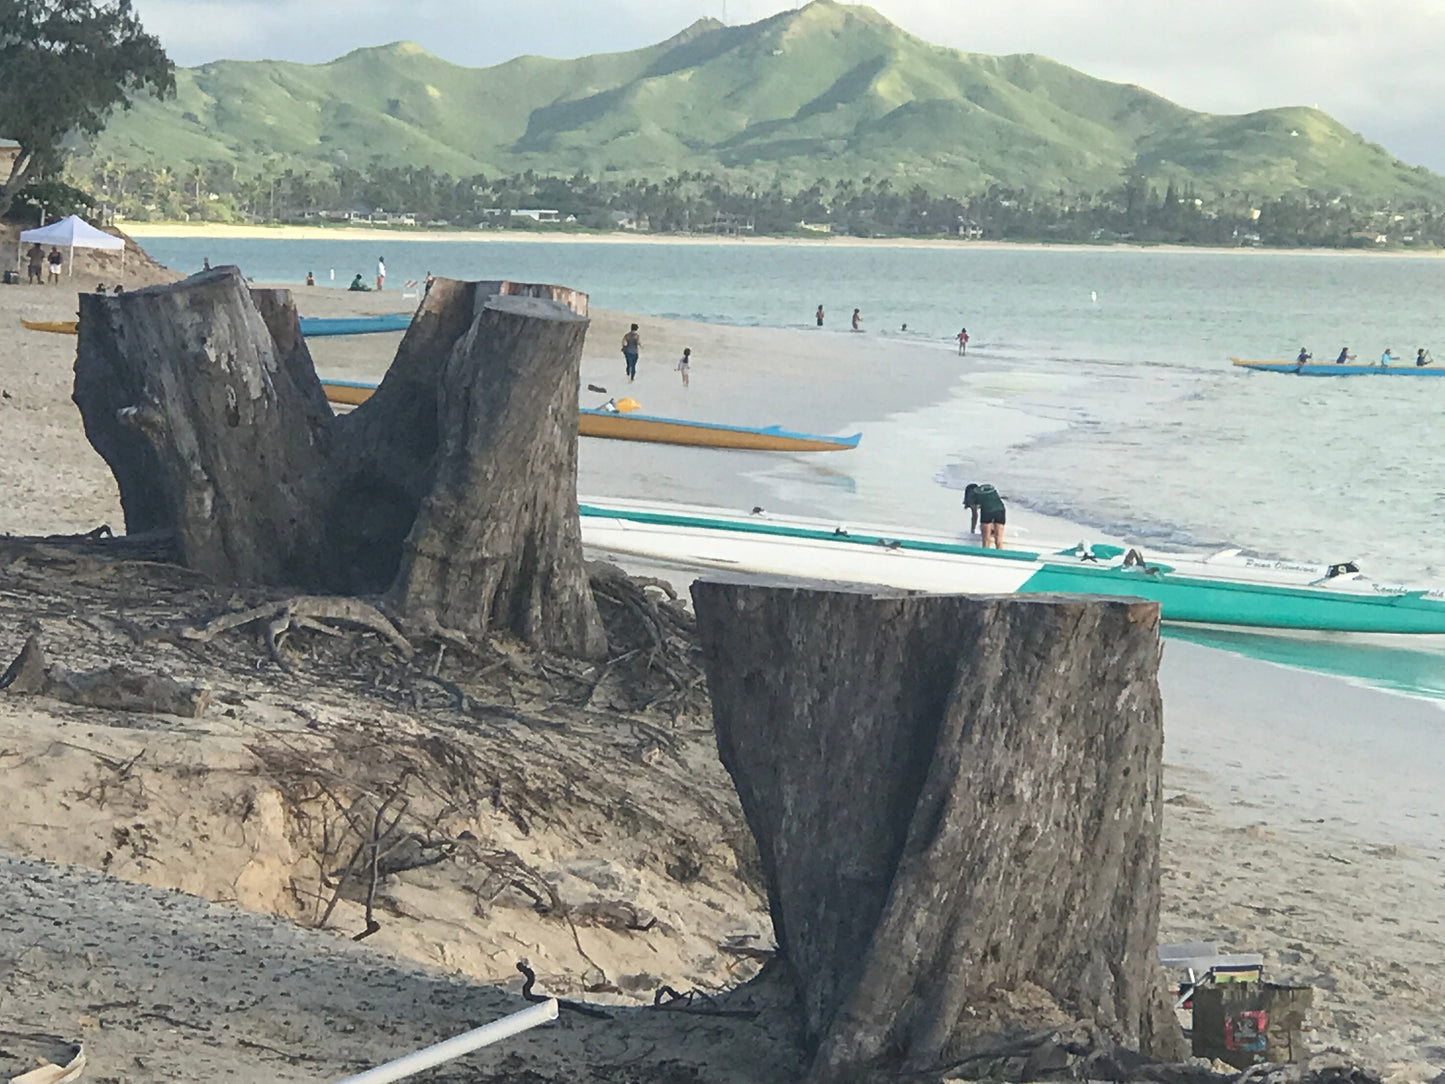 OG Kailua Beach Coastal Erosion Ironwood Stump Stool 18.18.12